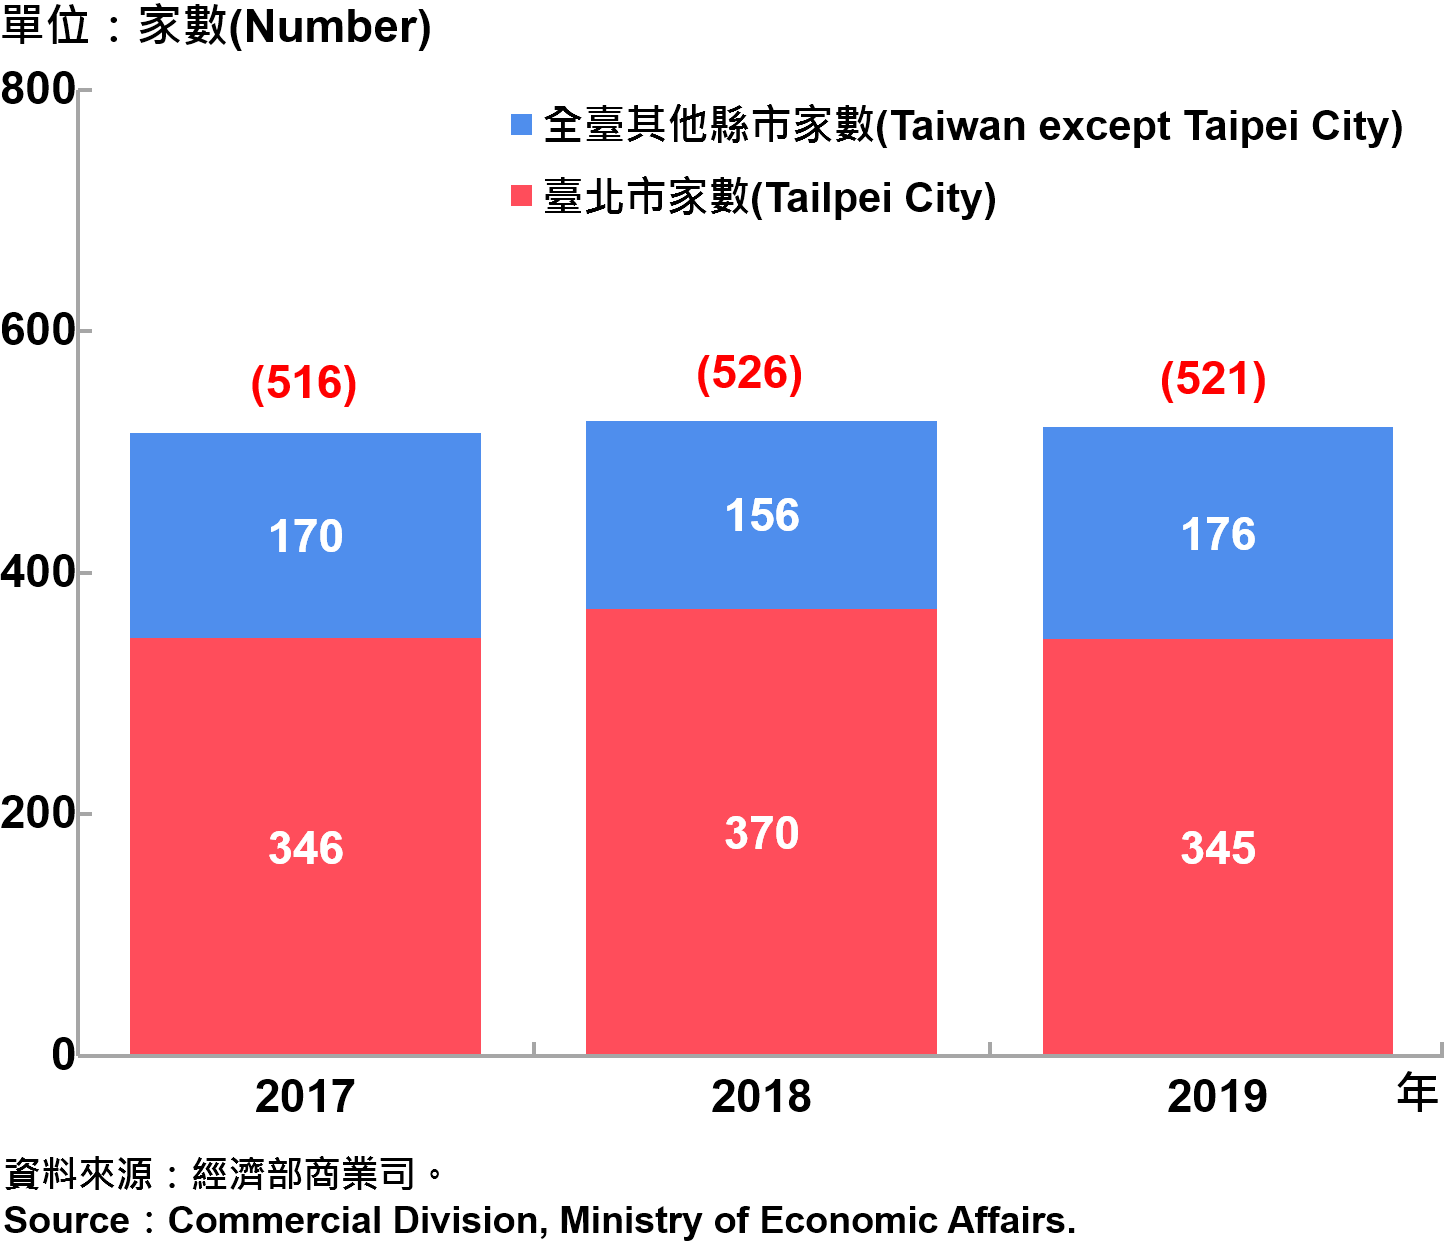 臺北市外商公司新設立家數—2019 Number of Newly Established Foreign Companies in Taipei City—2019